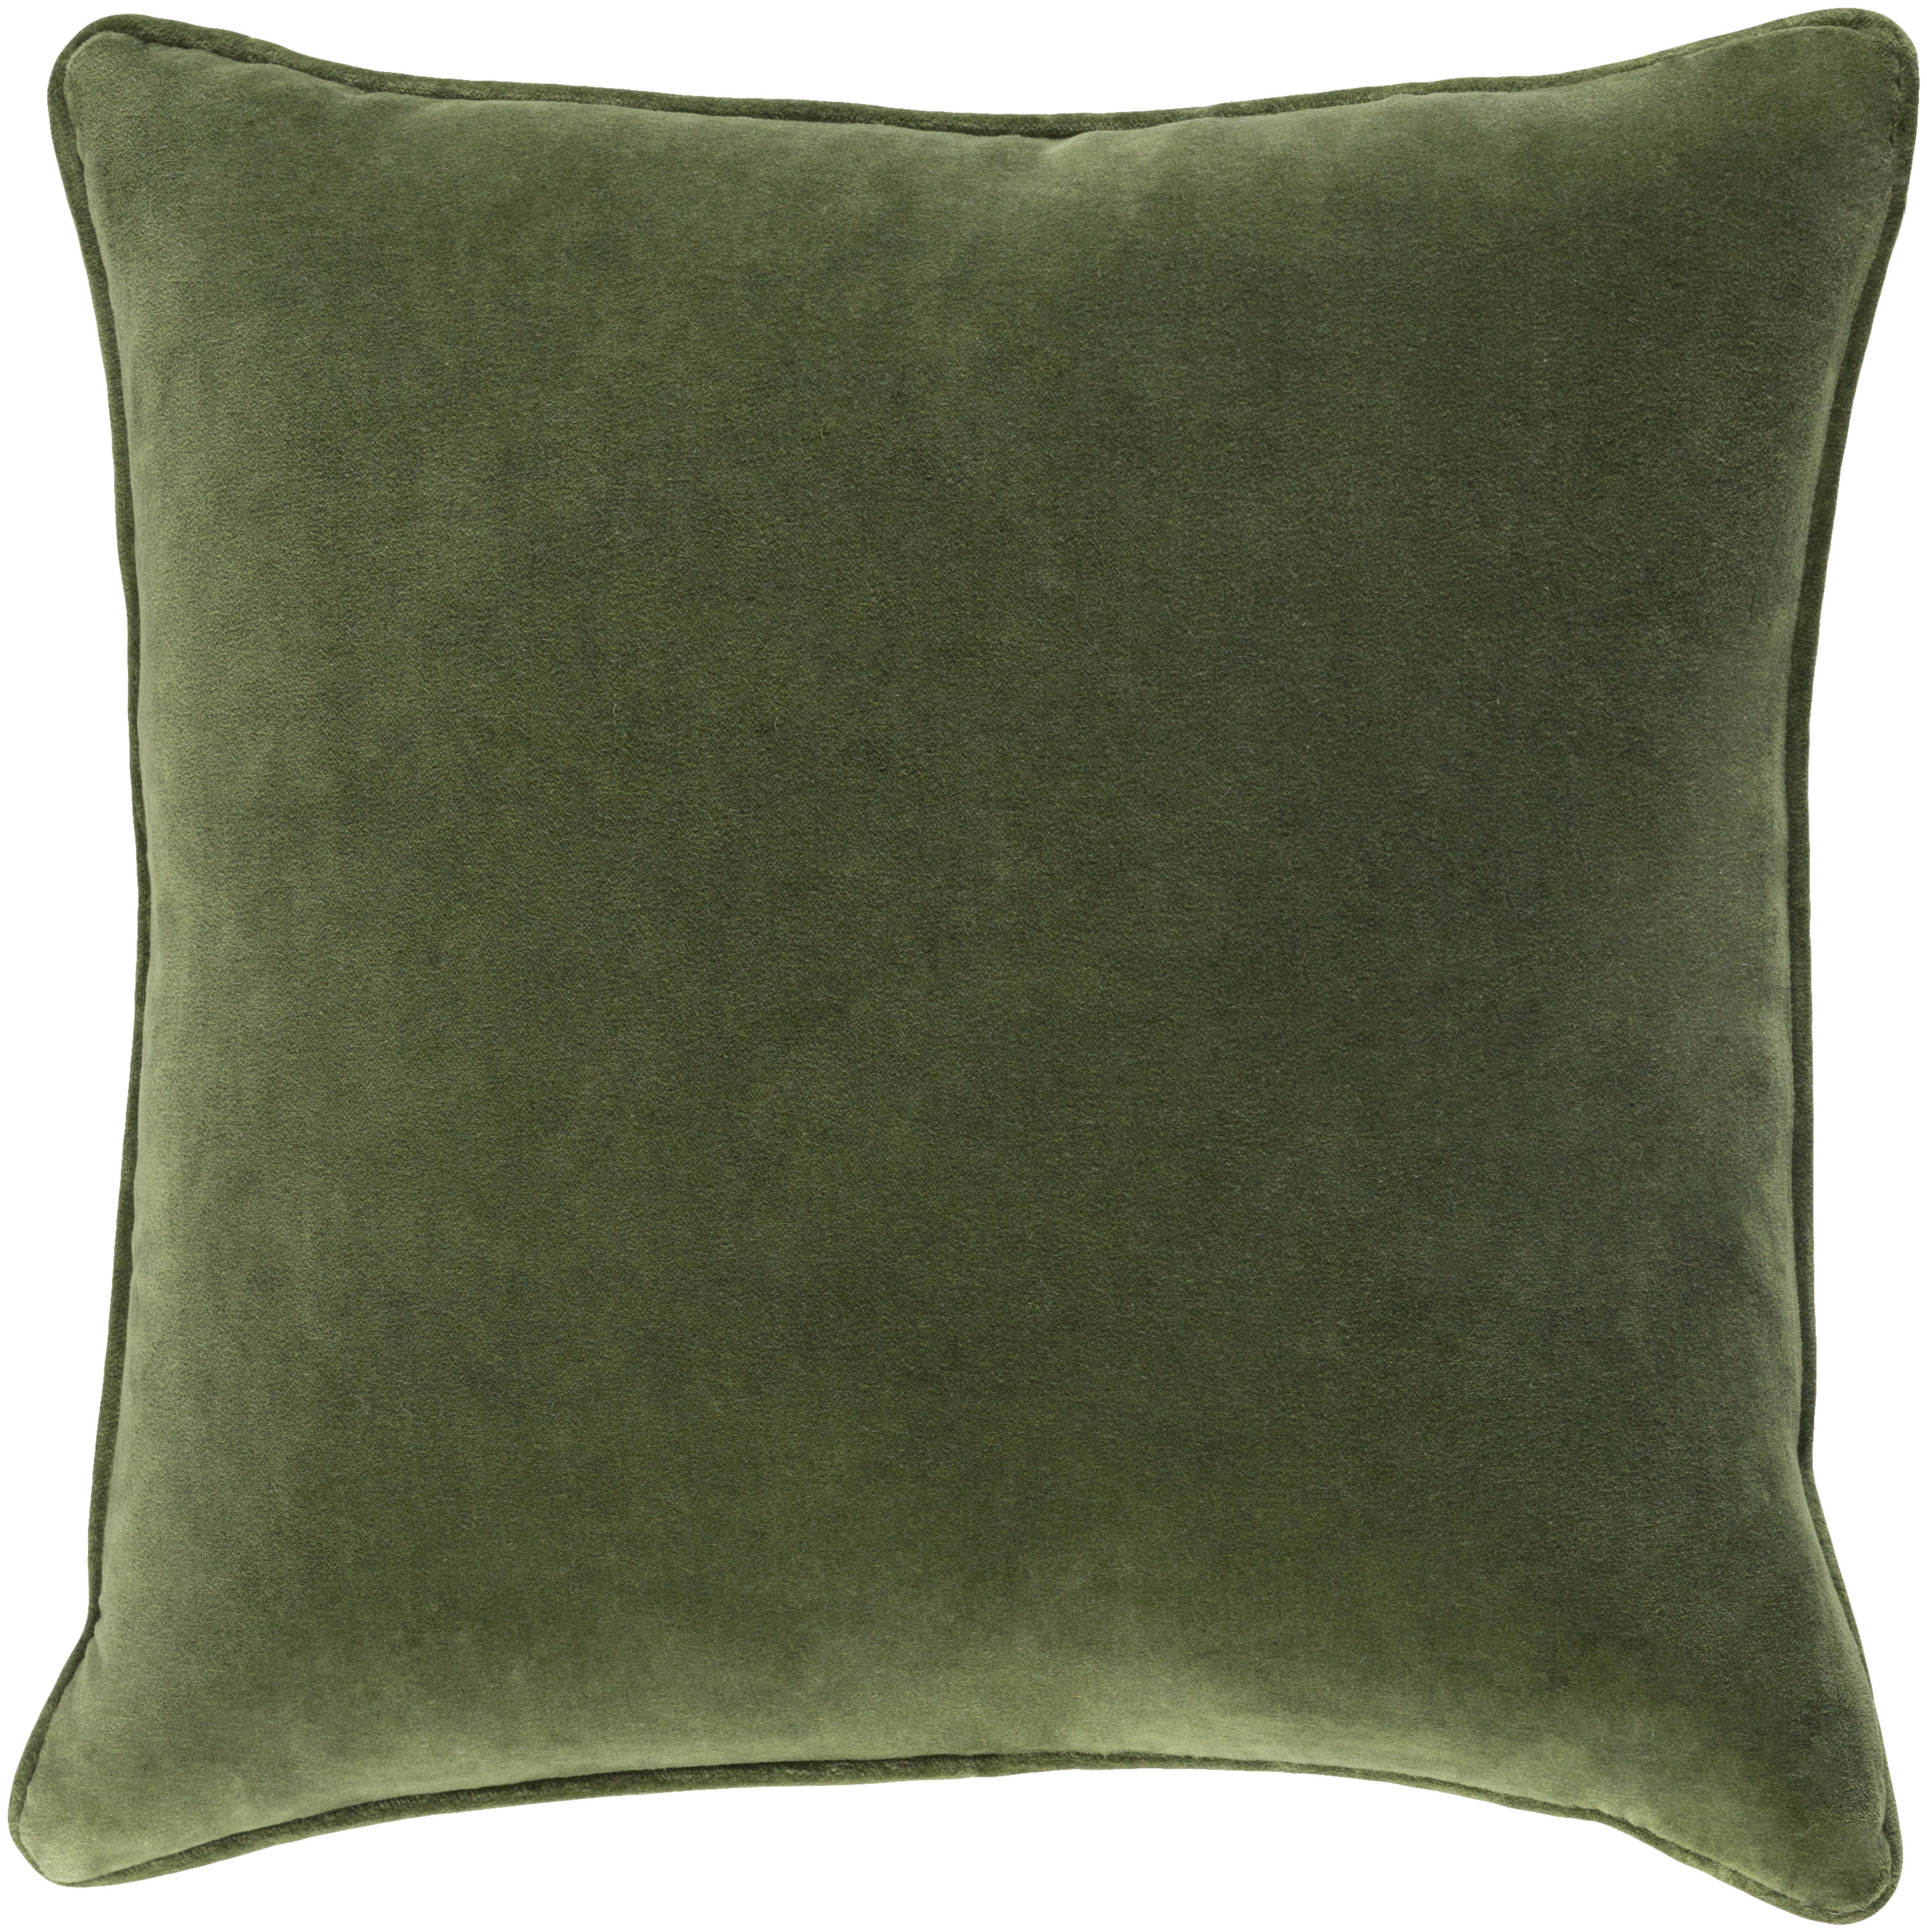 Safflower Throw Pillow, 20" x 20", pillow cover only - Surya